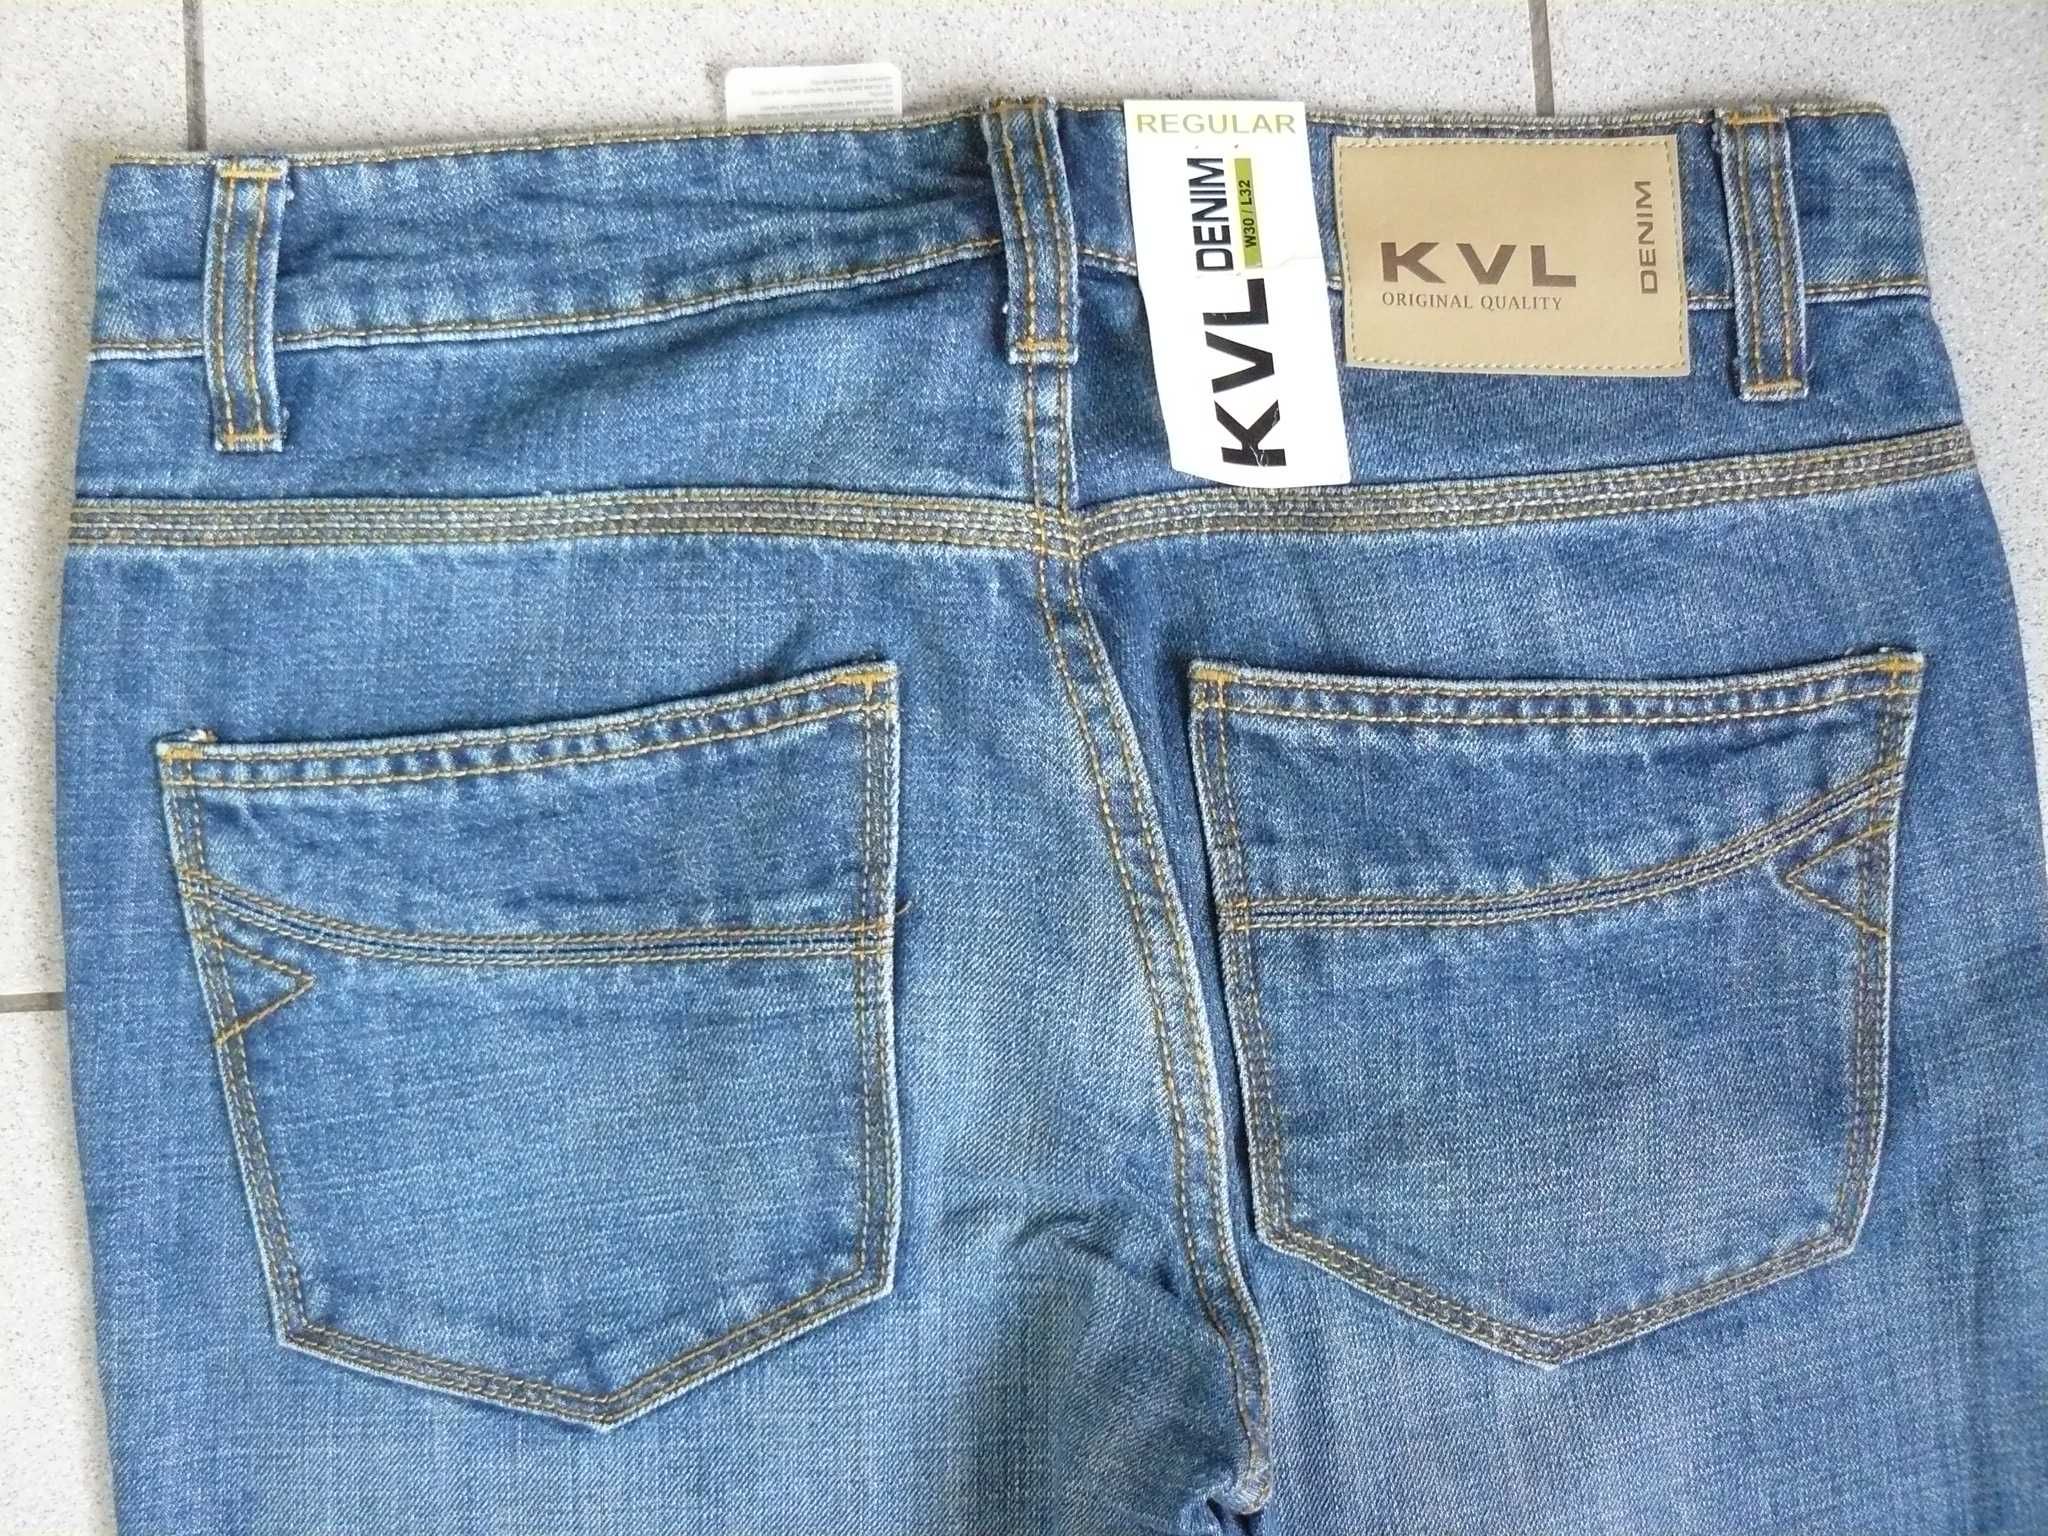 Jeans Barbati KENVELO Noi KVL7 Originali,Marime W30/L32,M Blue 144 CAC